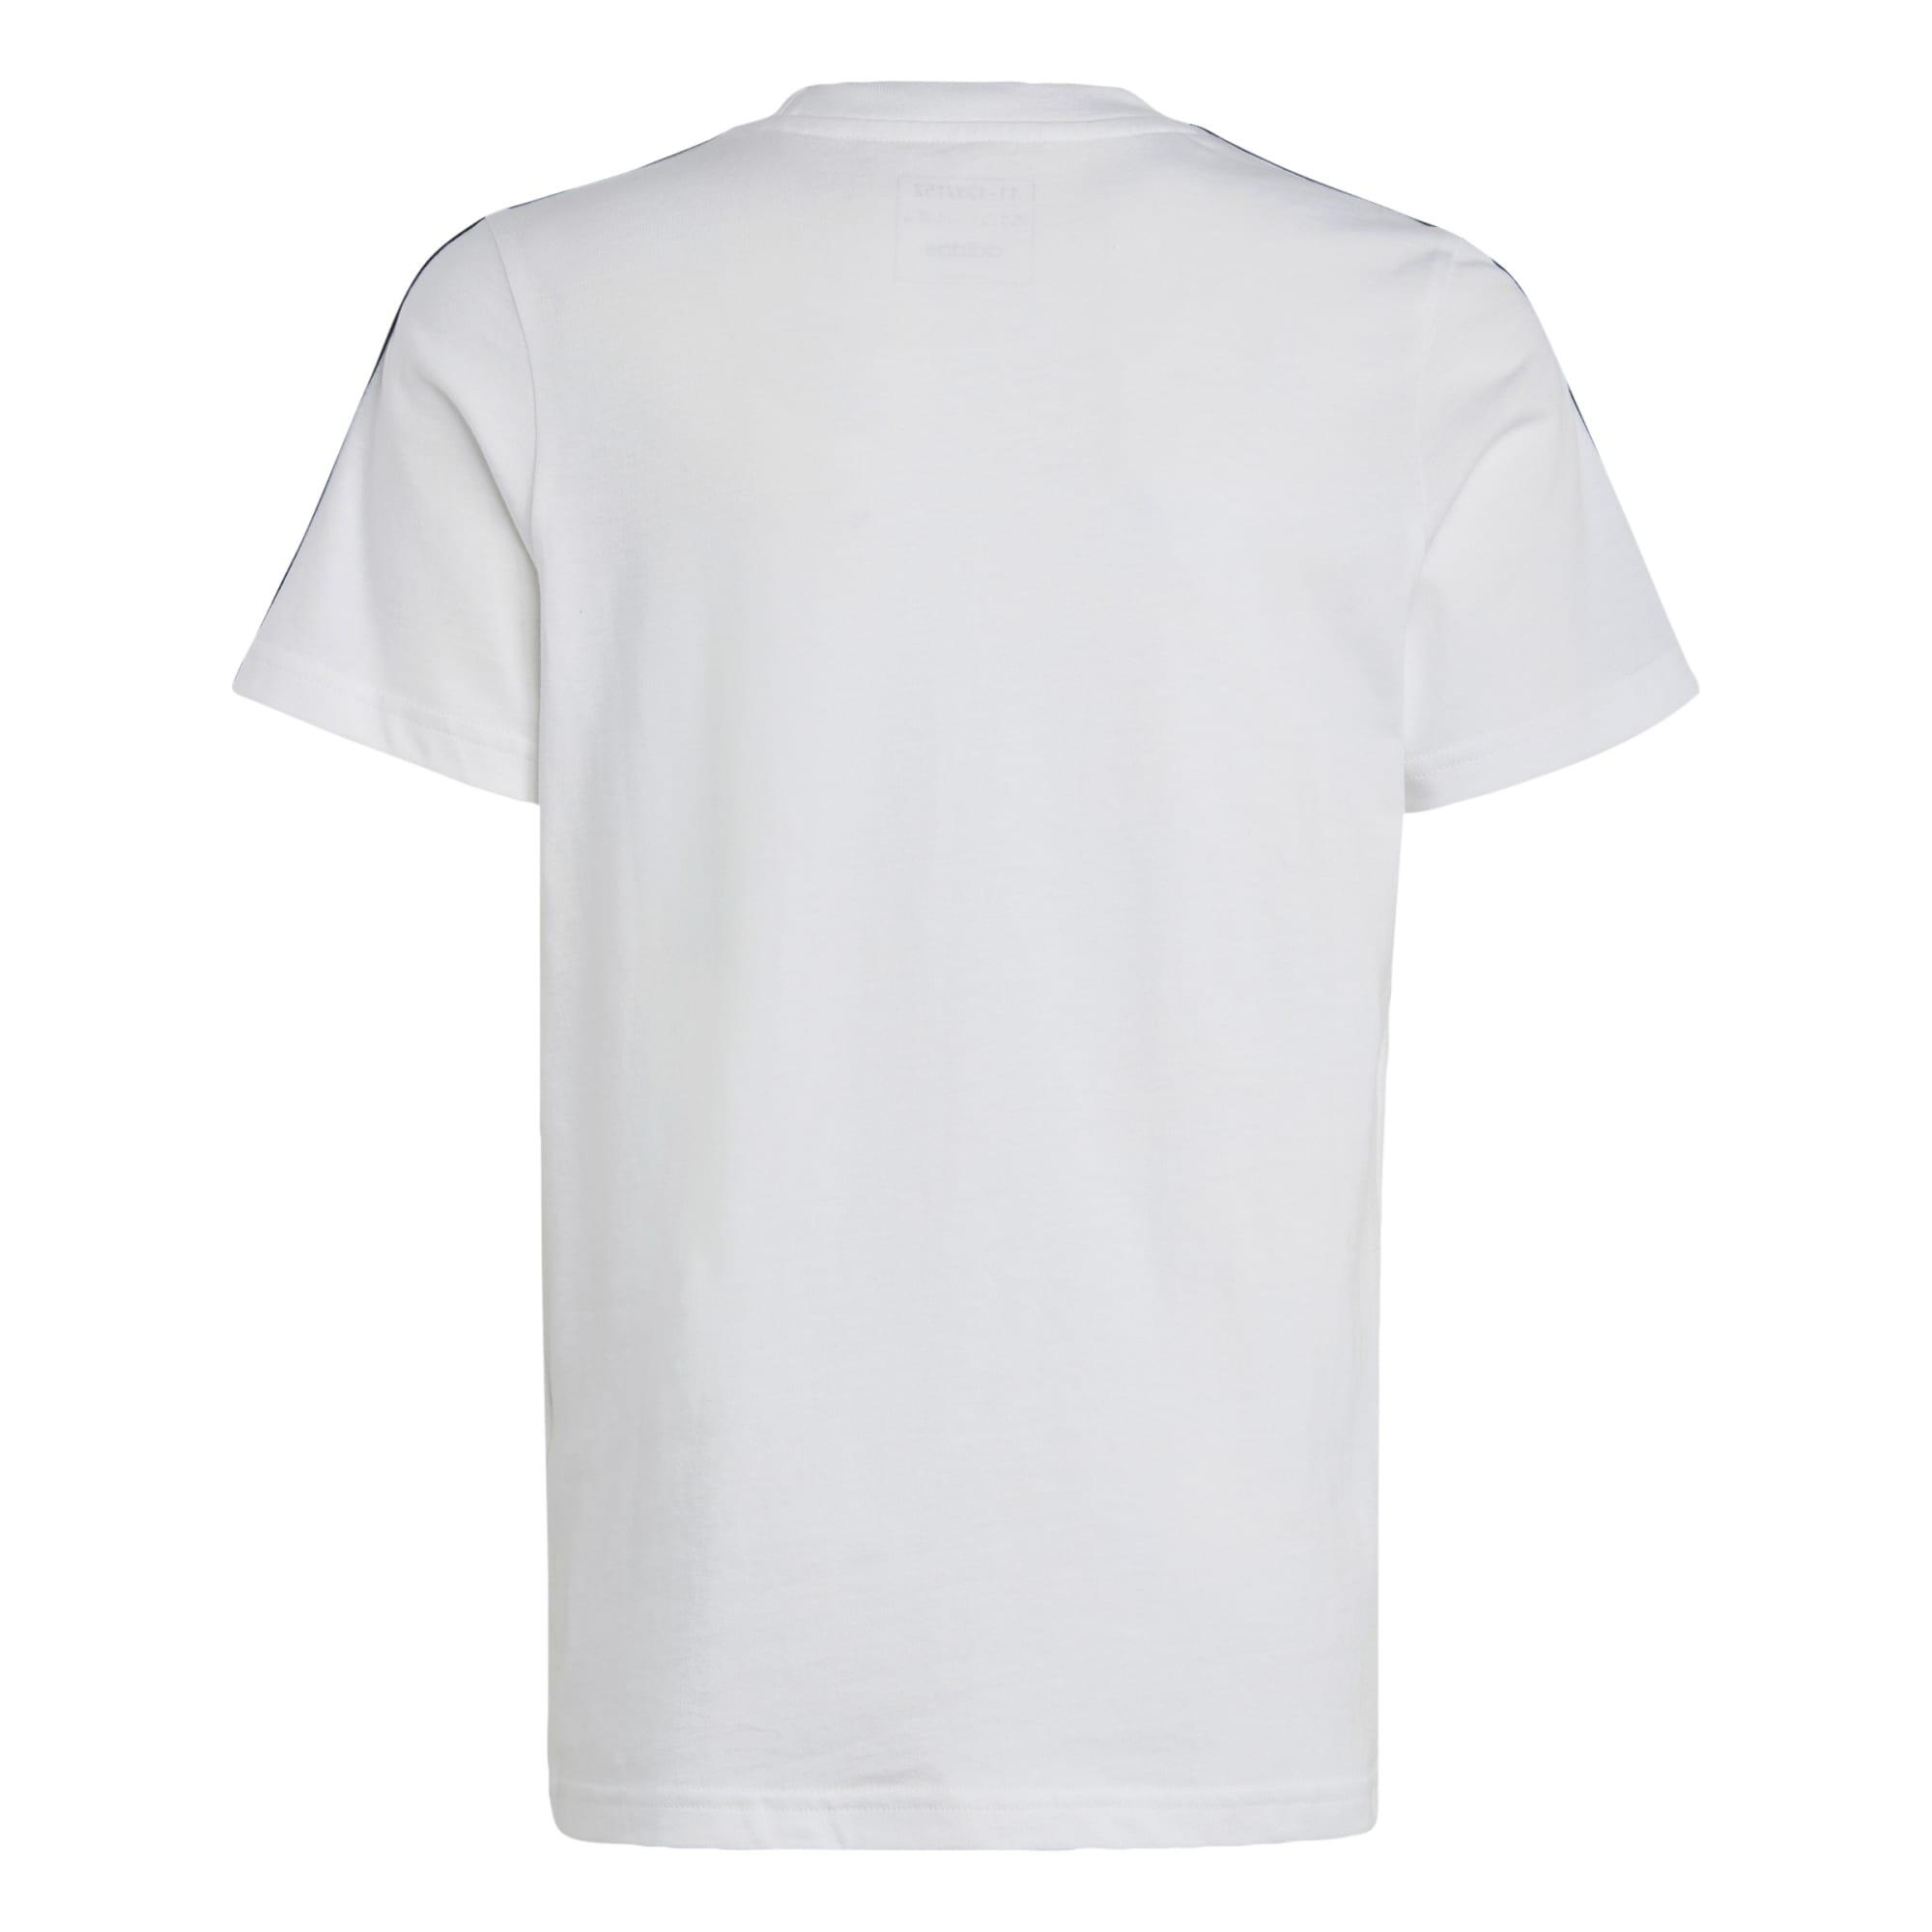 Kids' T-Shirt - White 4/7